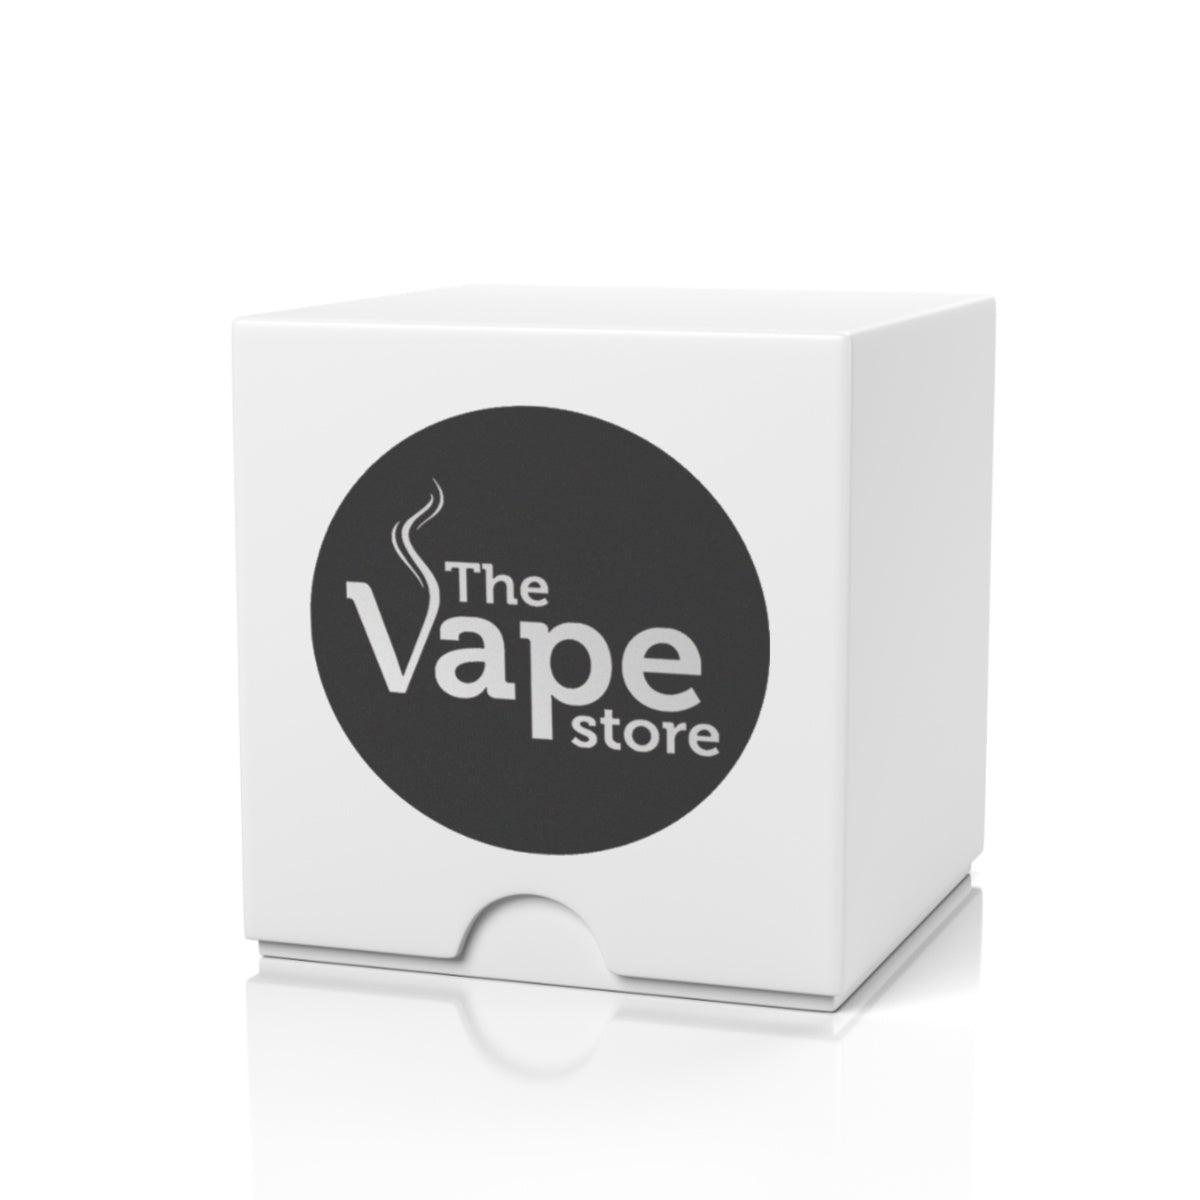 The Vape Store Sample Box - The Vape Store